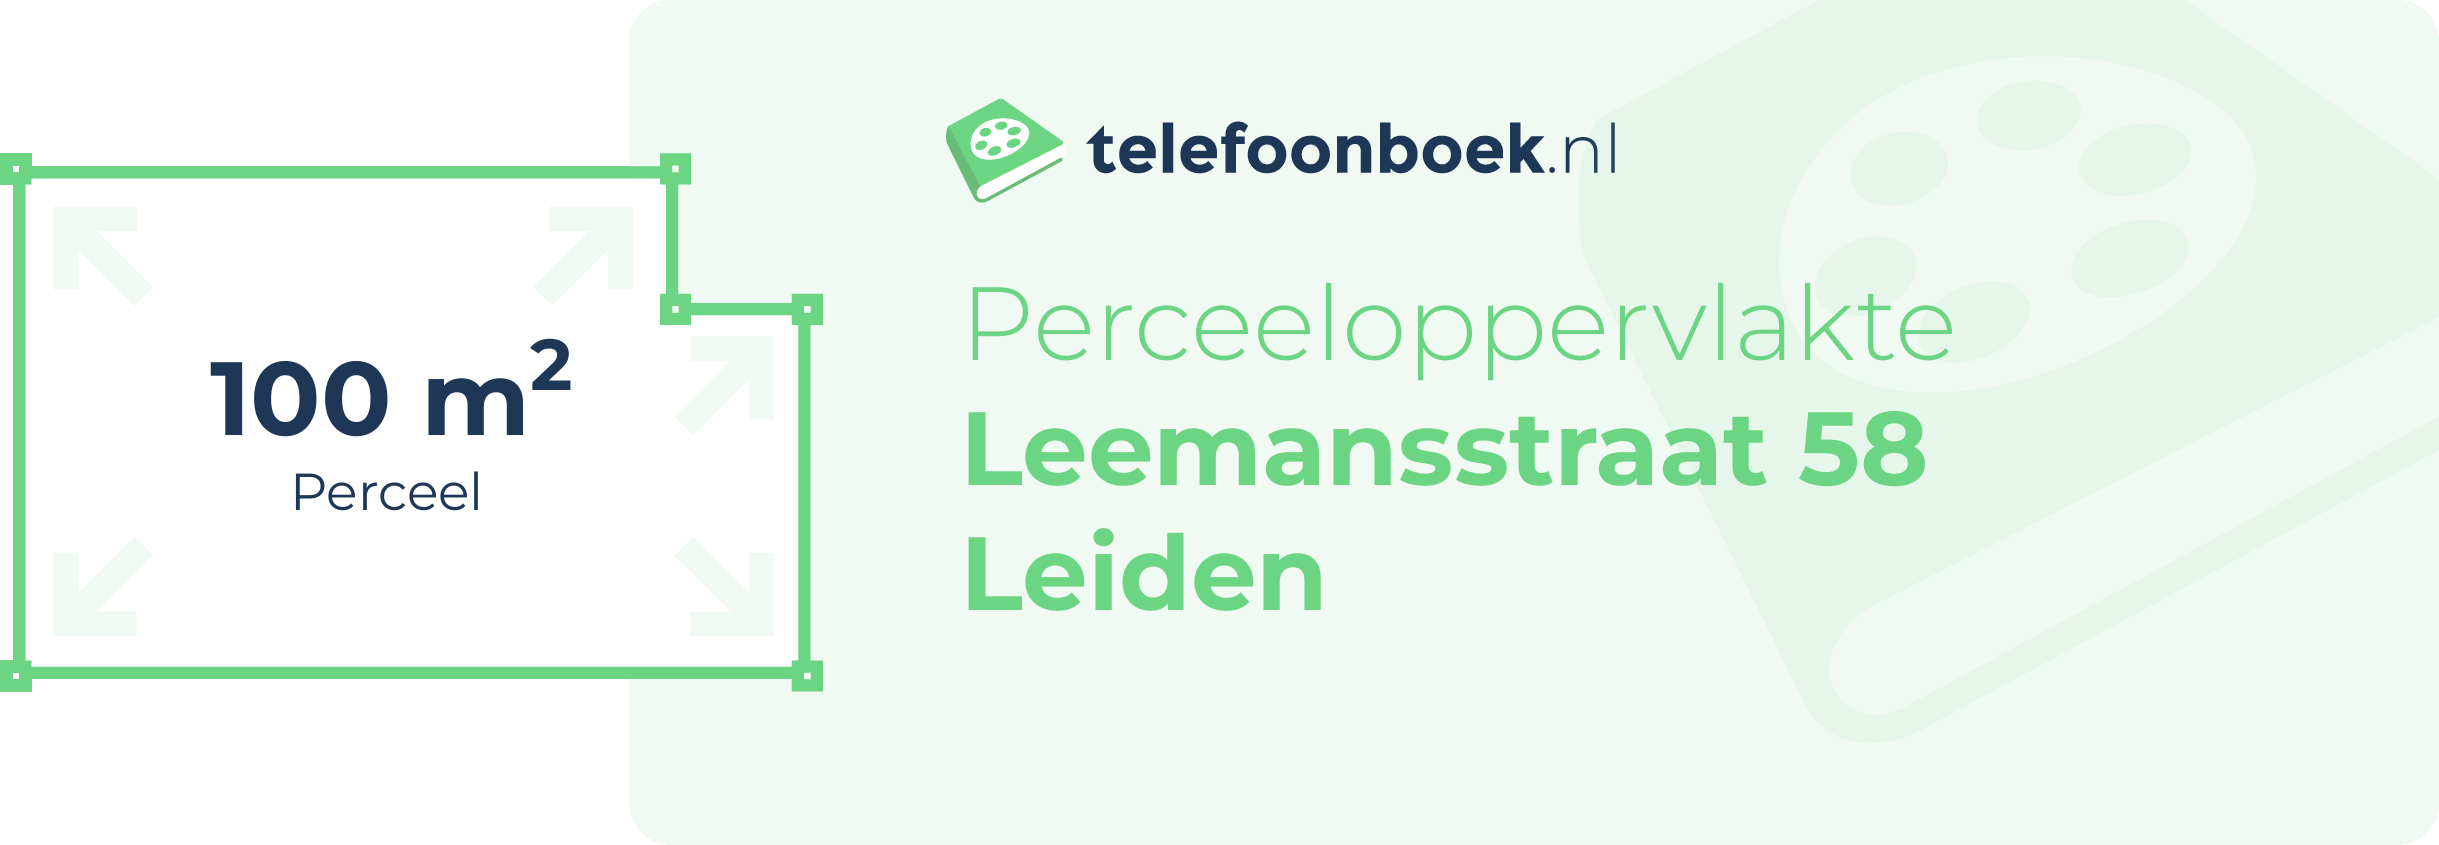 Perceeloppervlakte Leemansstraat 58 Leiden